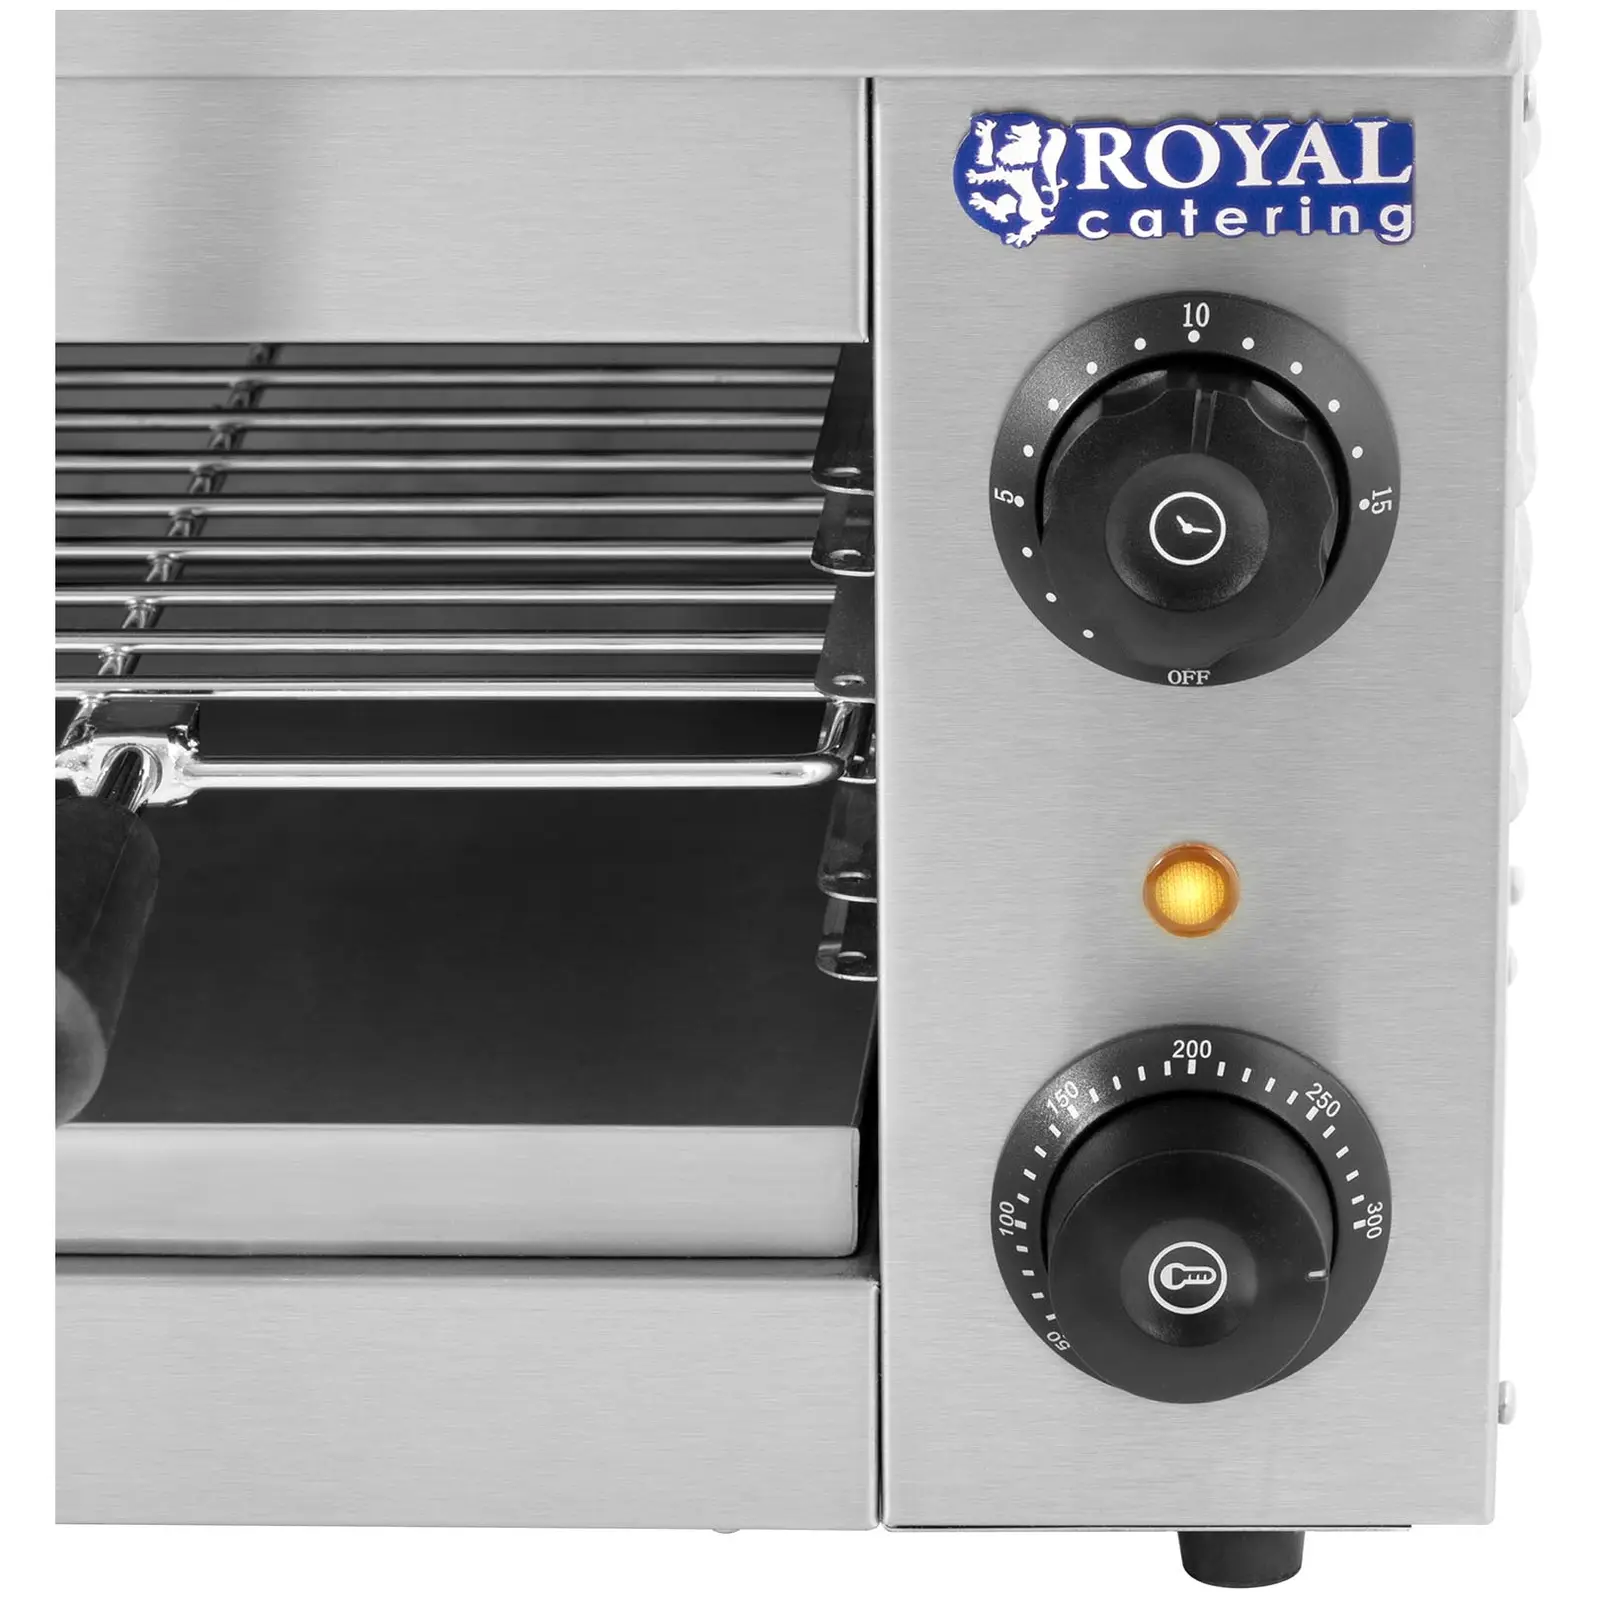 Salamandergrill - 2,000 W - Royal Catering - 50–300 °C